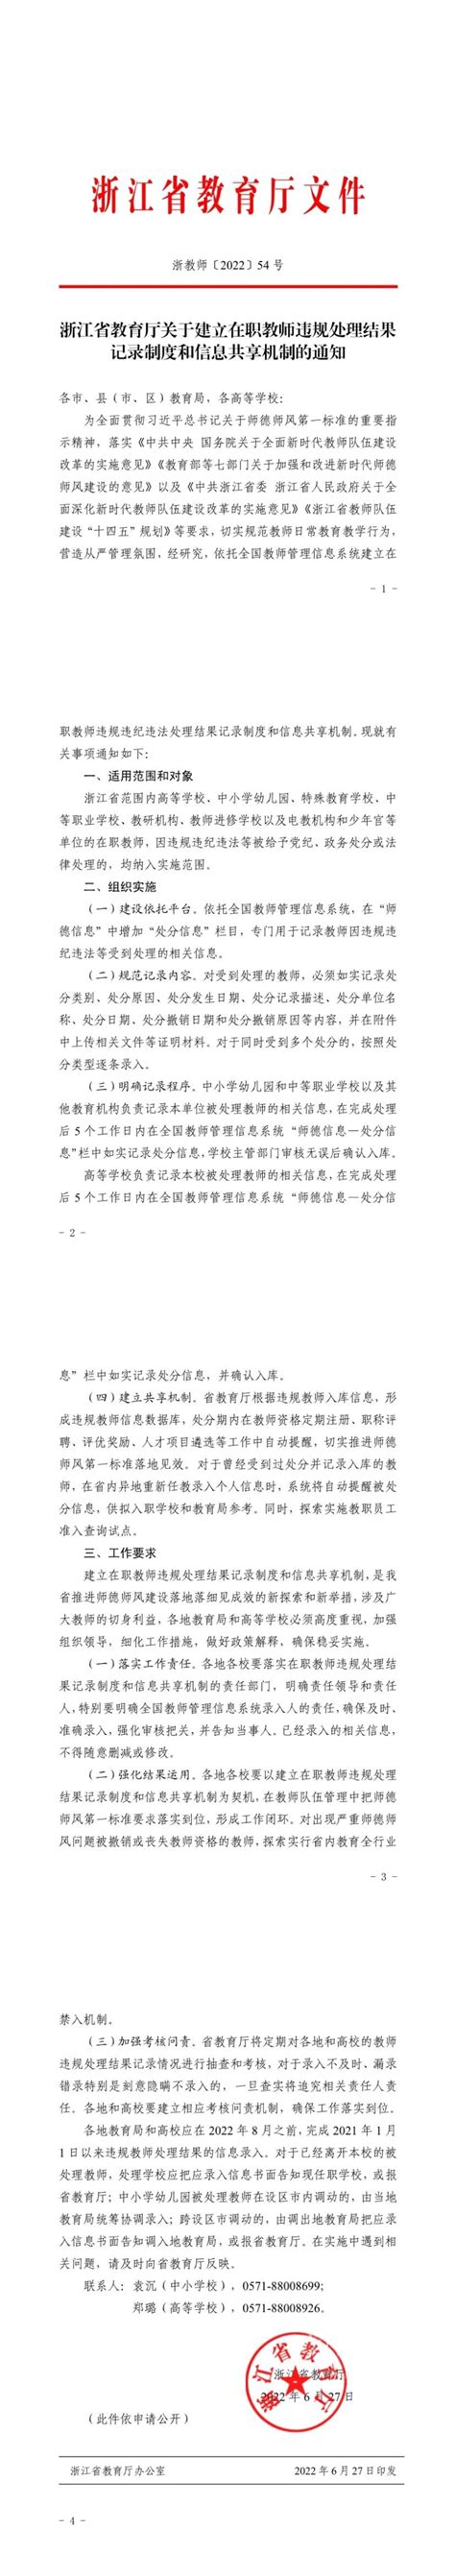 浙江省教育厅关于建立在职教师违规处理结果记录制度和信息共享机制的通知